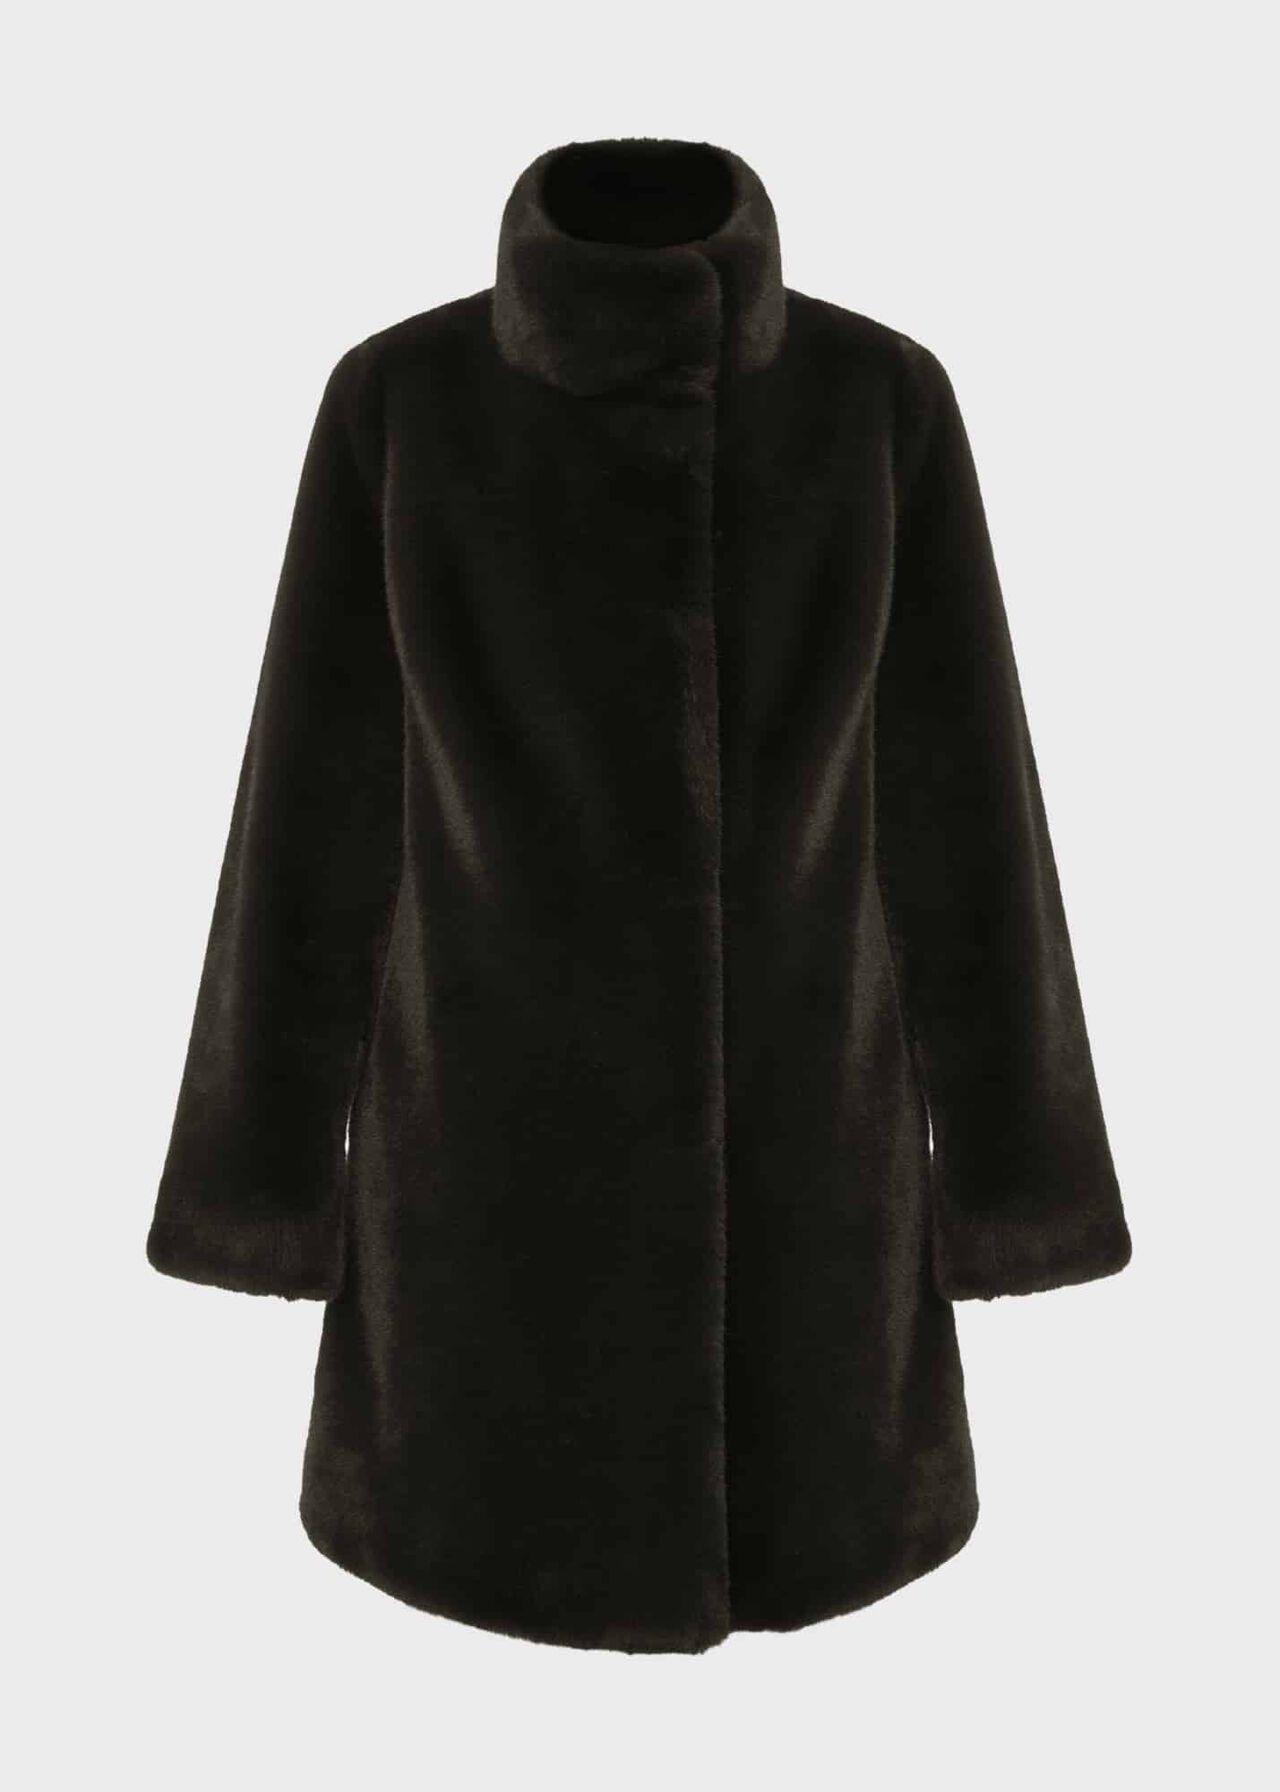 Maddox Faux Fur Coat, Olive Green, hi-res